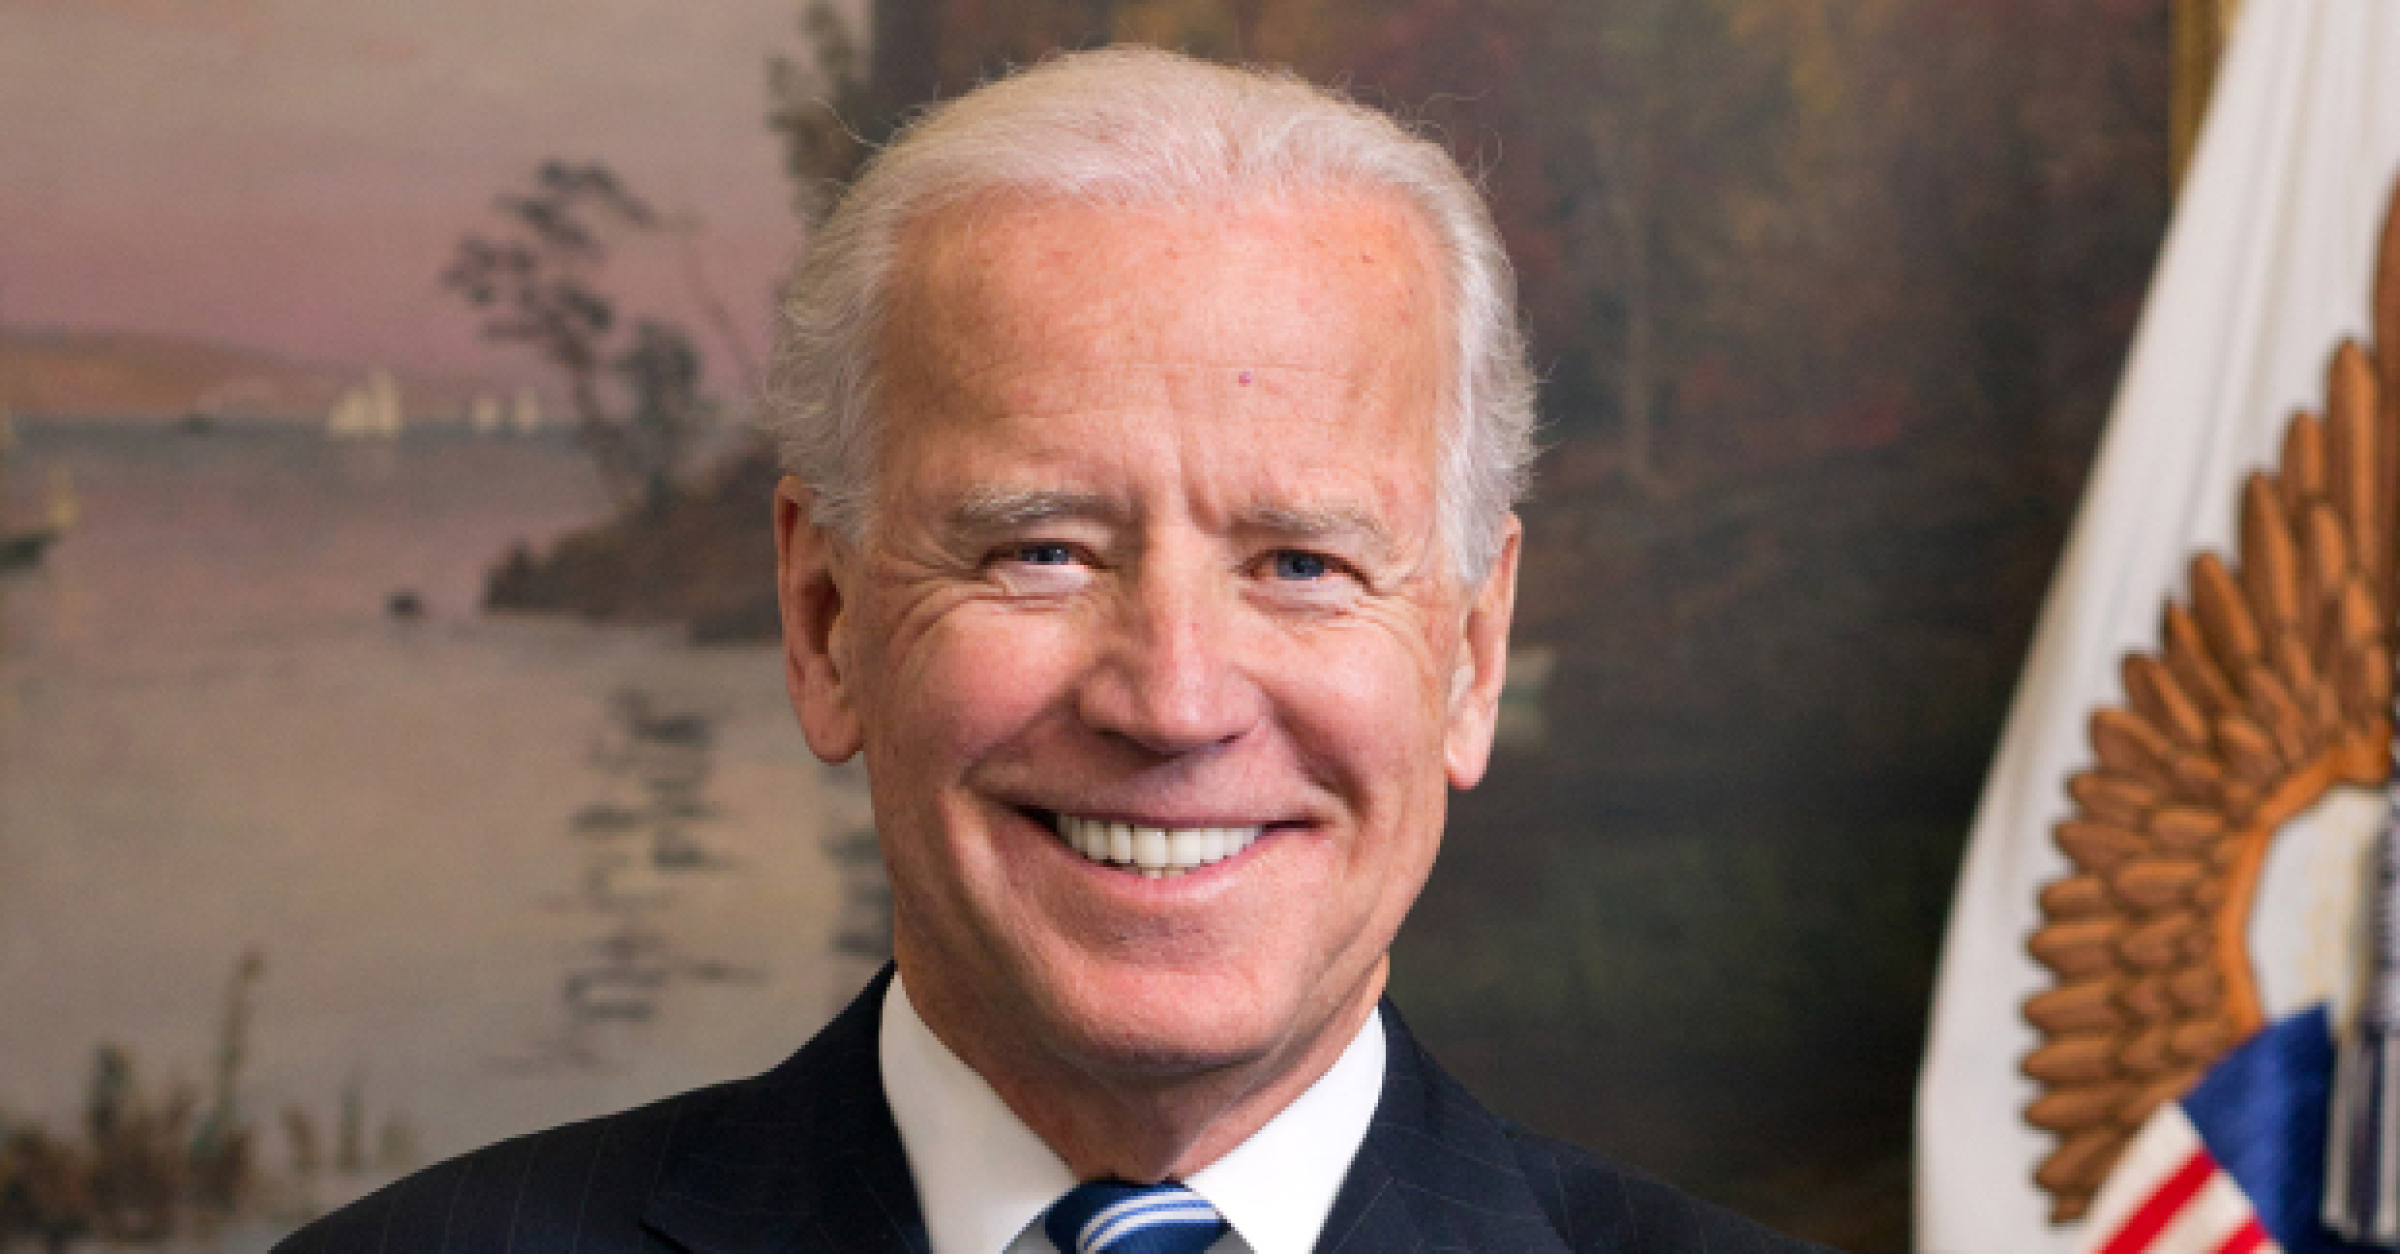 Joe Biden Wins Presidency